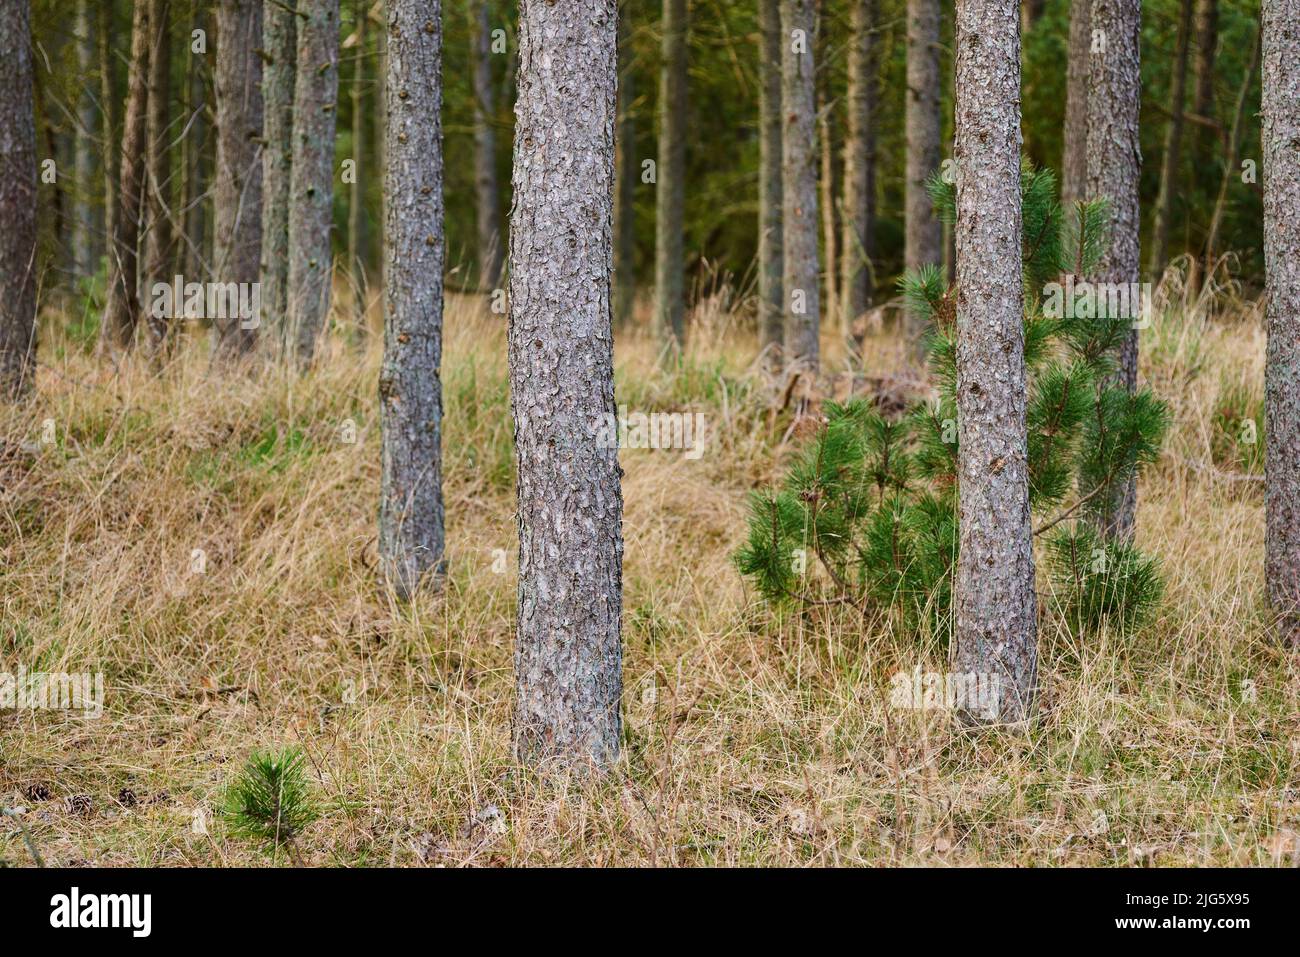 Ein Kiefernwald mit trockenem Gras und grünen Pflanzen. Landschaft mit vielen Kiefernstämmen in der Natur während der Herbstsaison. Nicht kultivierte und wilde Sträucher Stockfoto